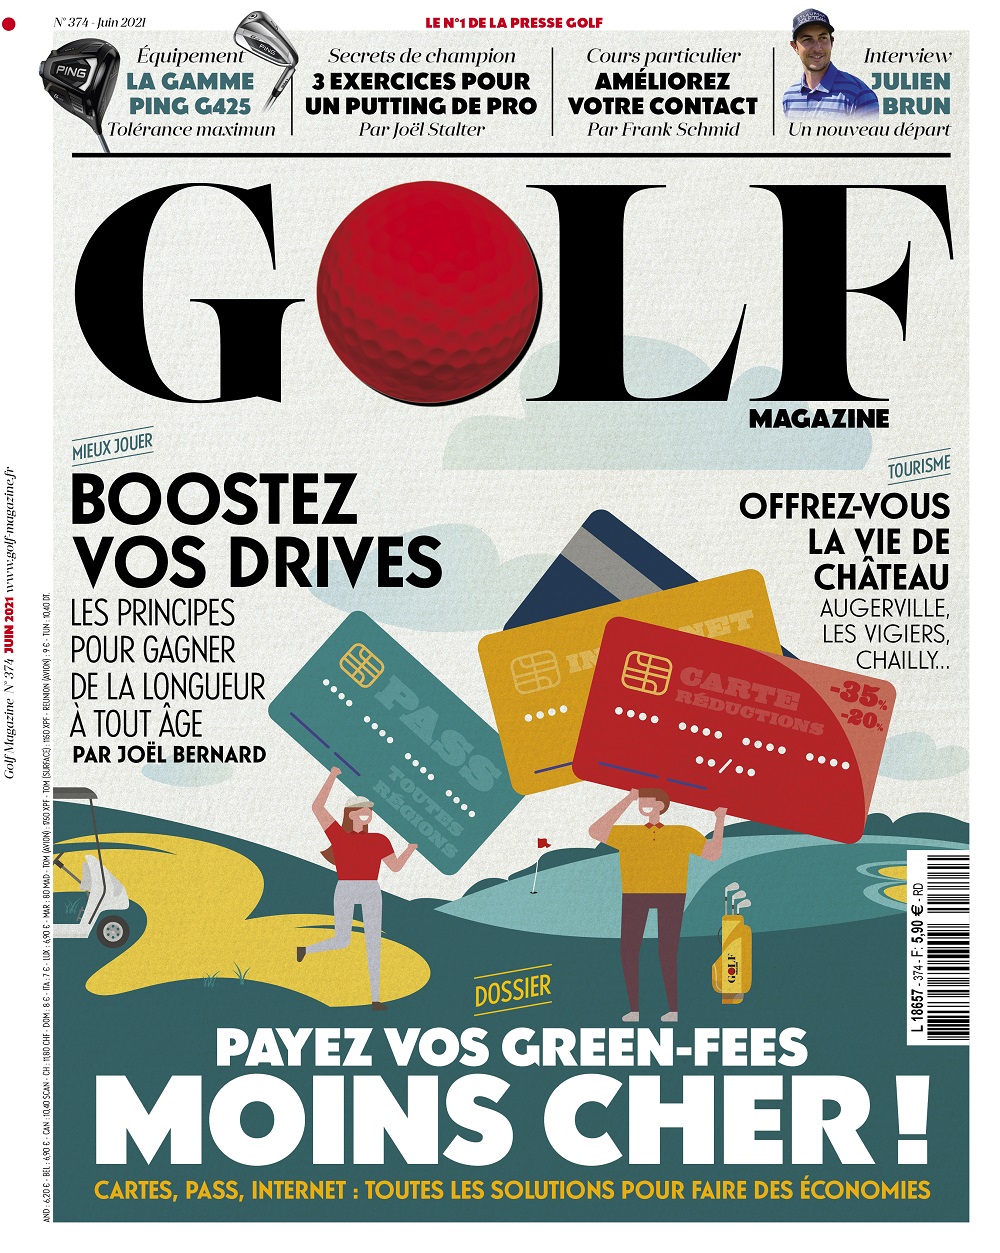 Le Golf Magazine n°374 est en kiosque !